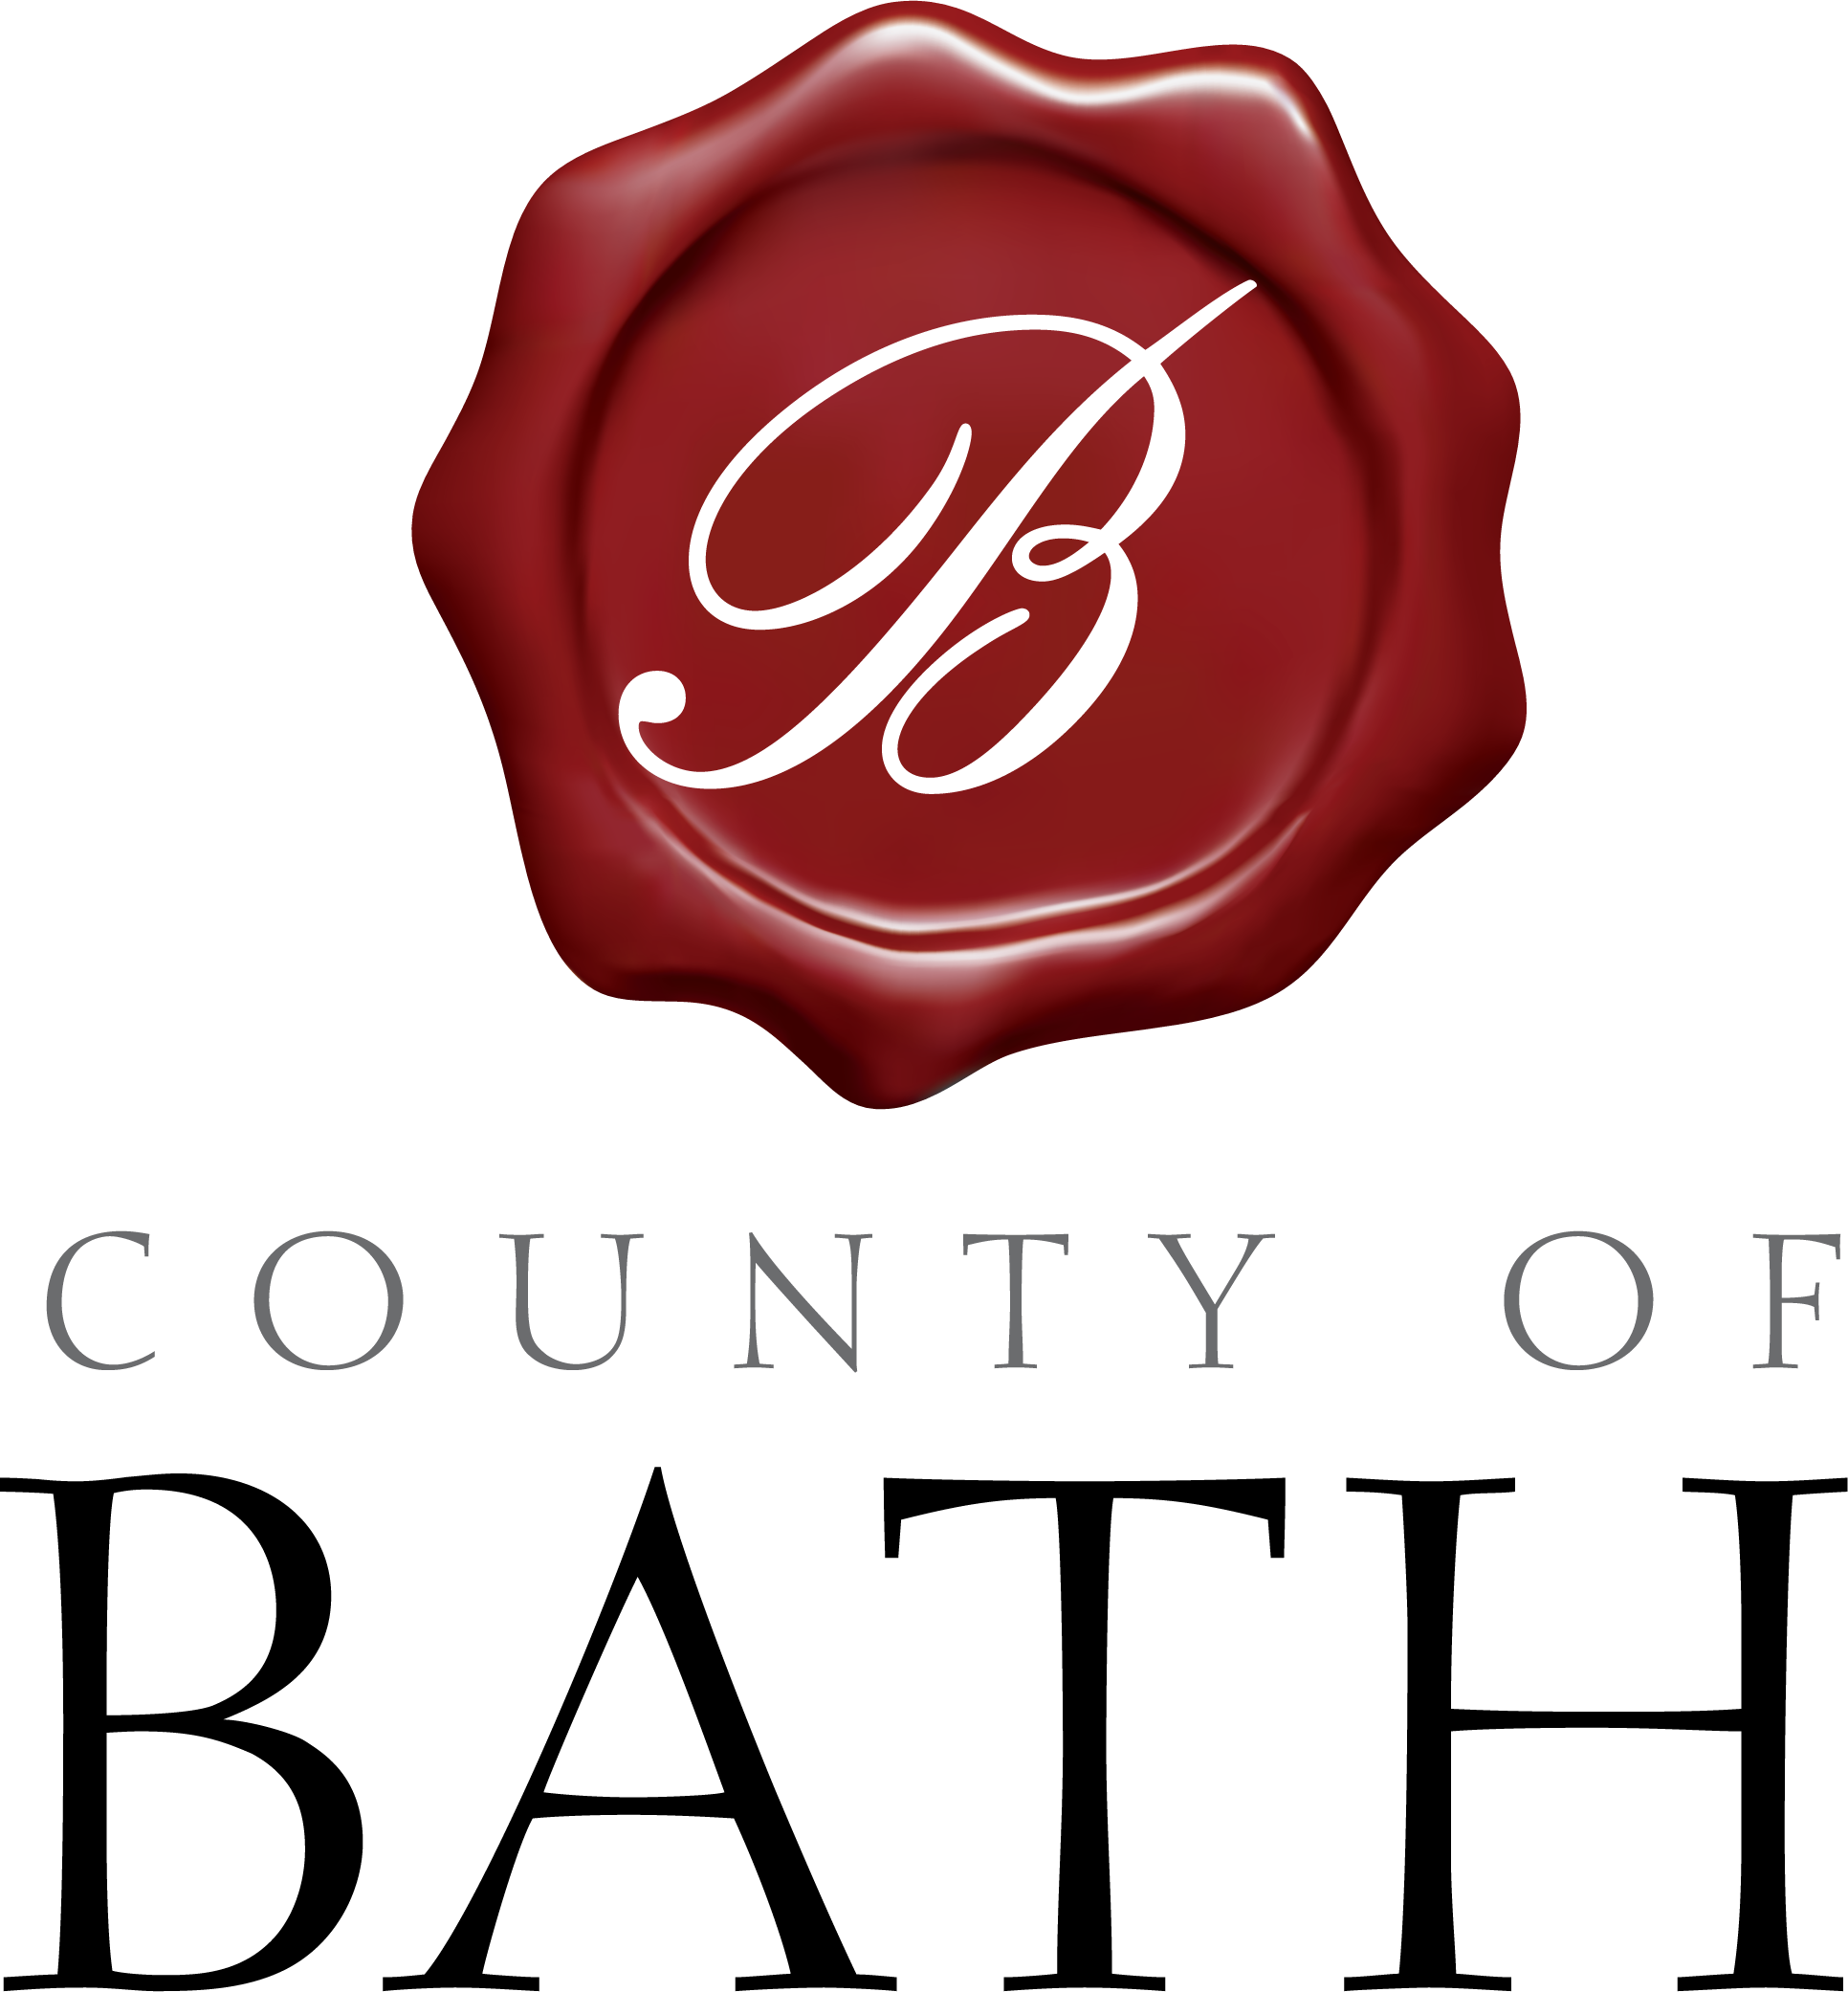 County of Bath logo